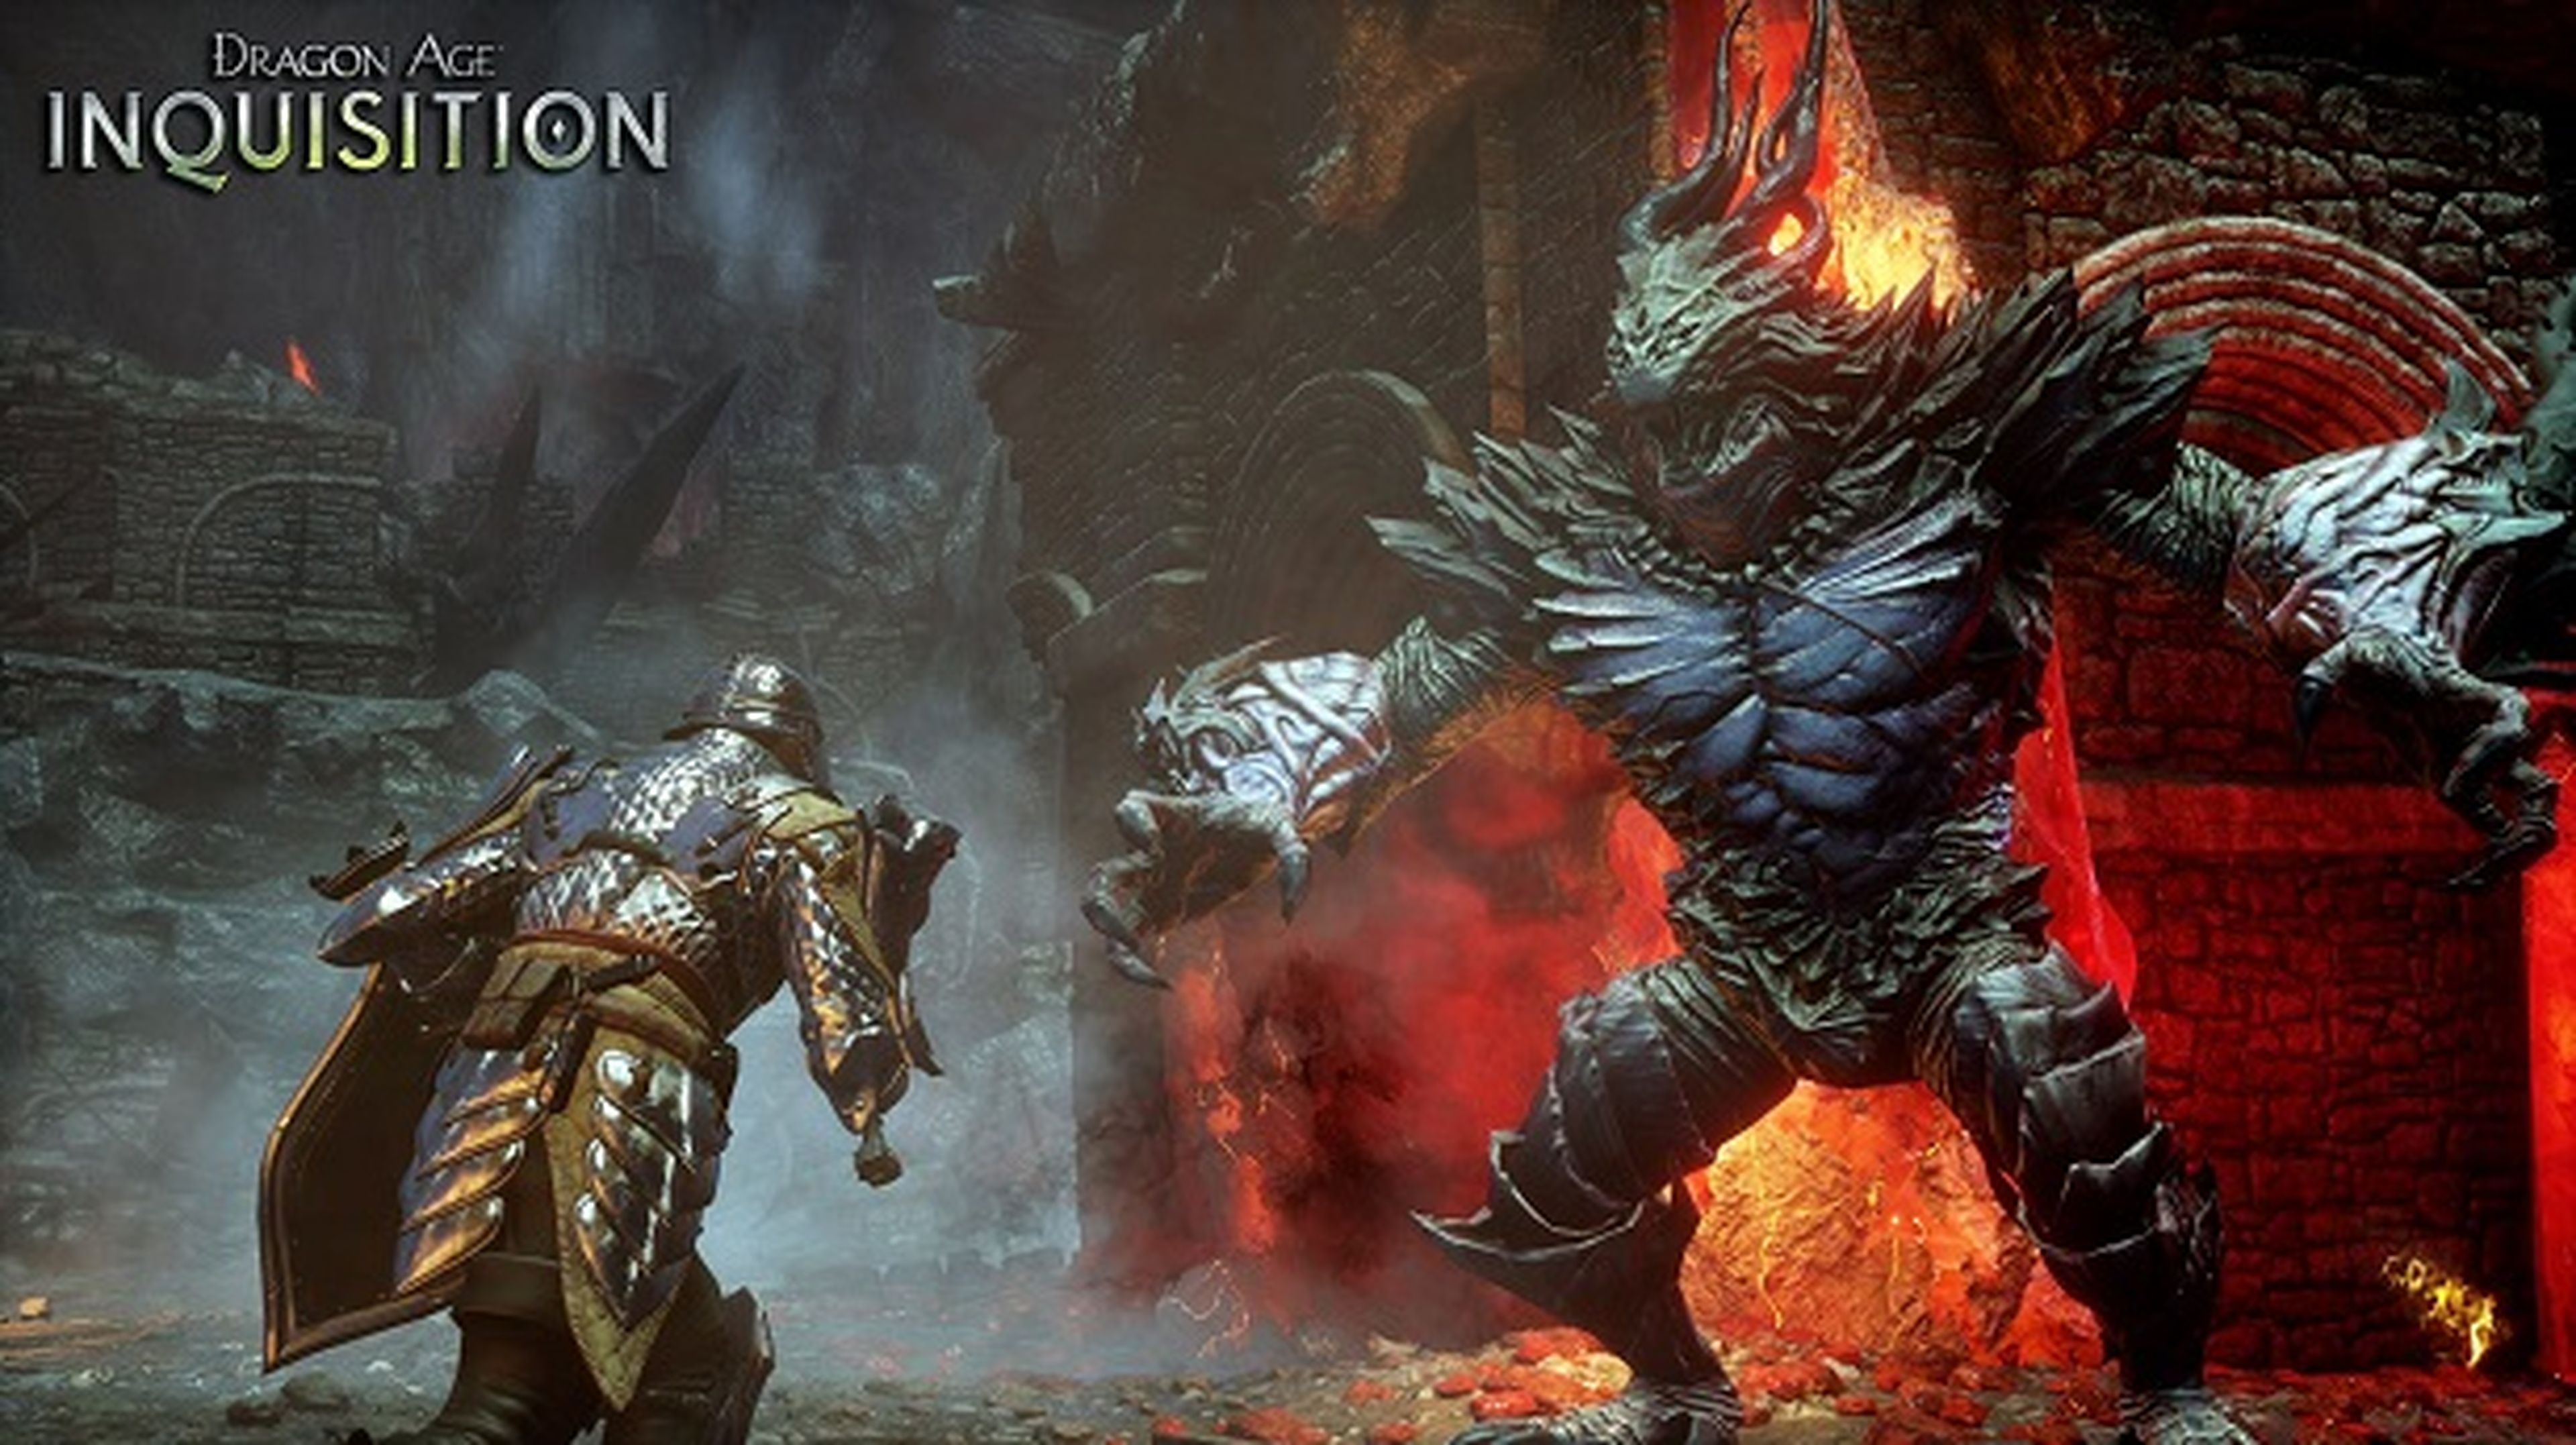 Dragon Age: Inquisition elegido "Juego del Año" en los DICE Awards 2015